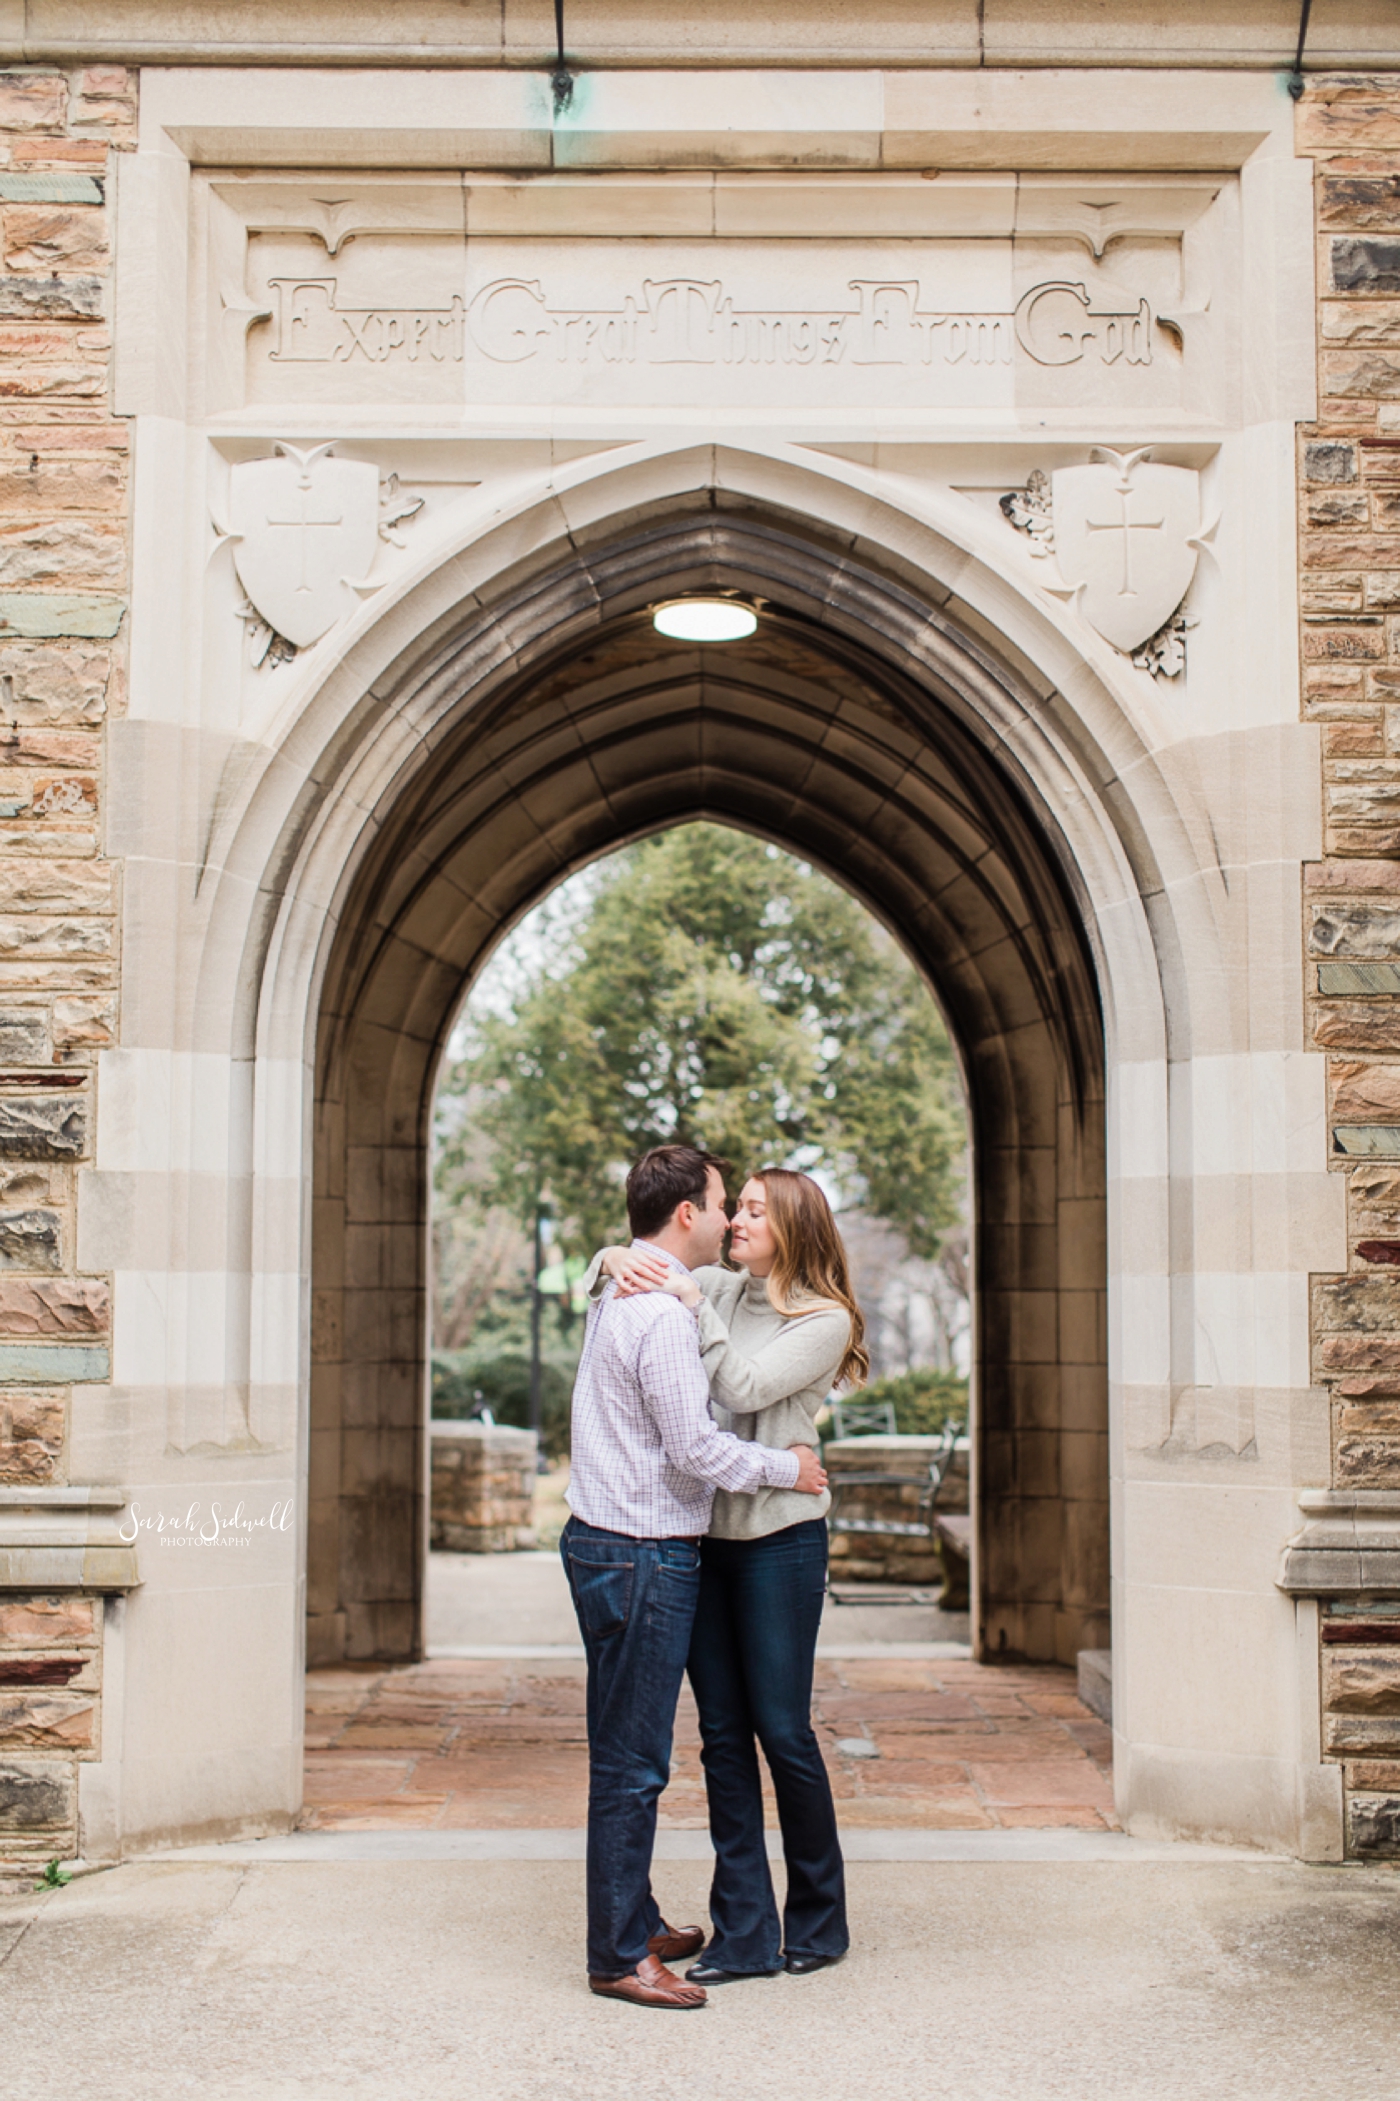 A couple kiss beneath an archway. 